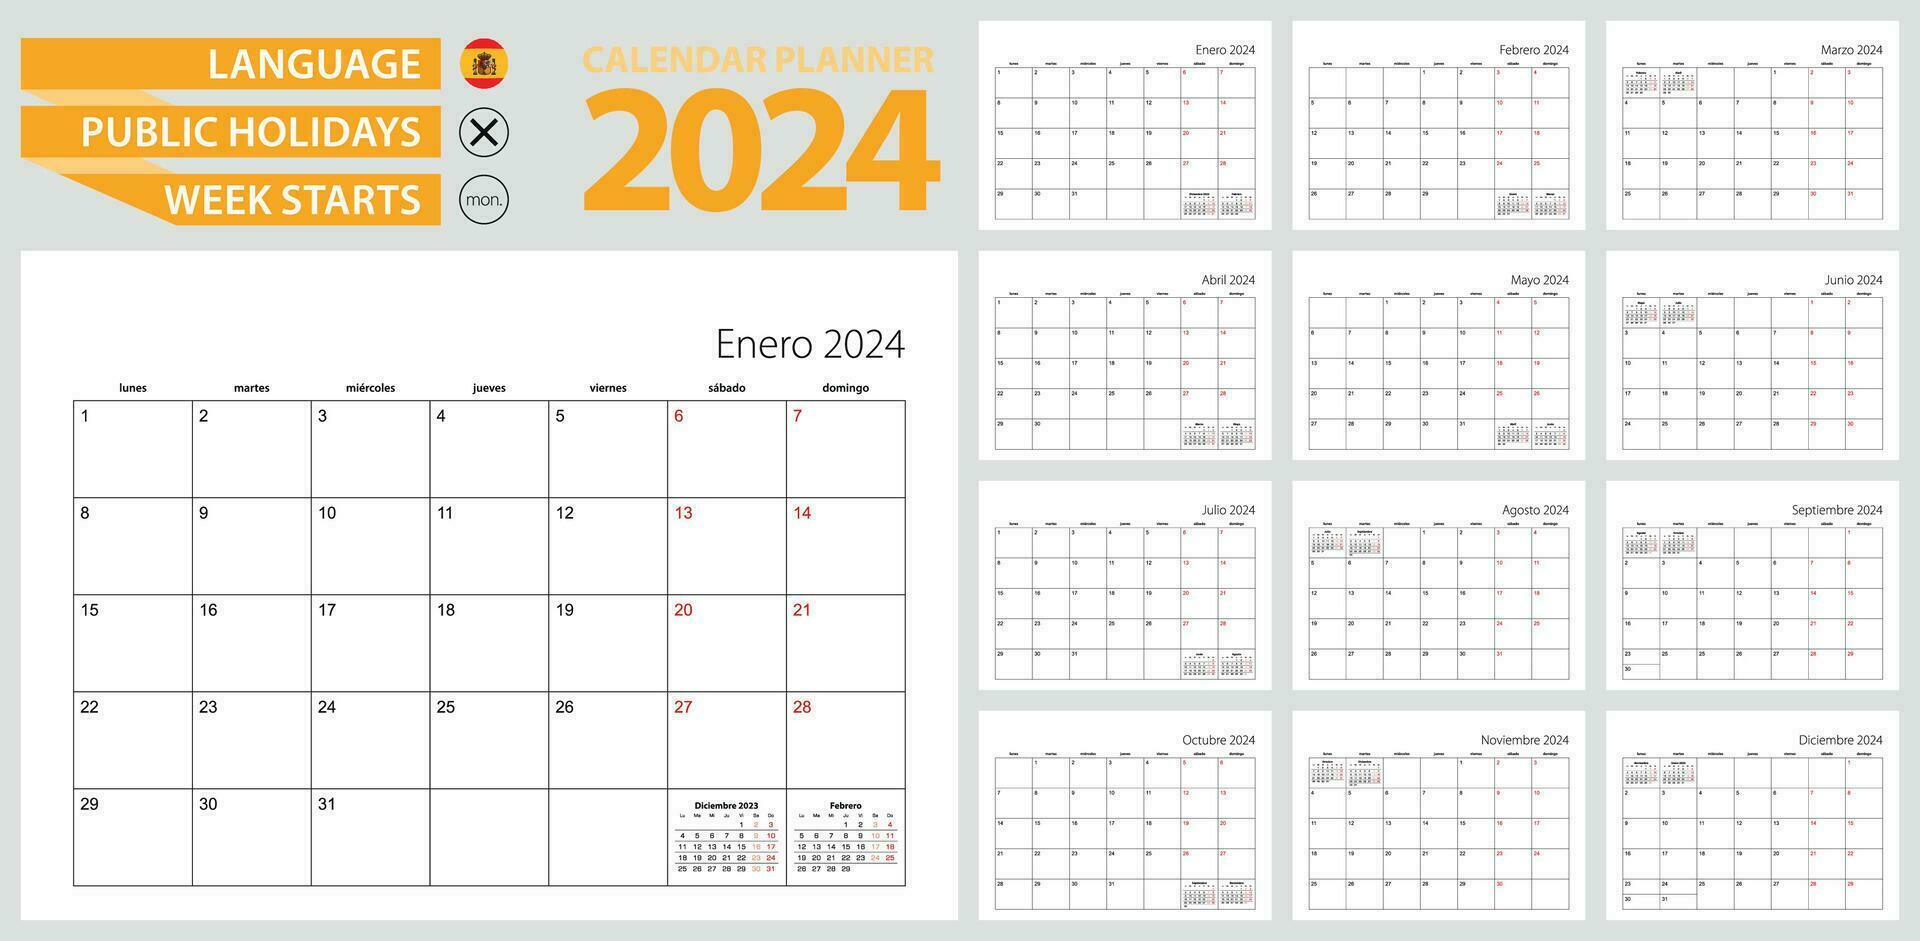 spanska kalender planerare för 2024. spanska språk, vecka börjar från måndag. vektor